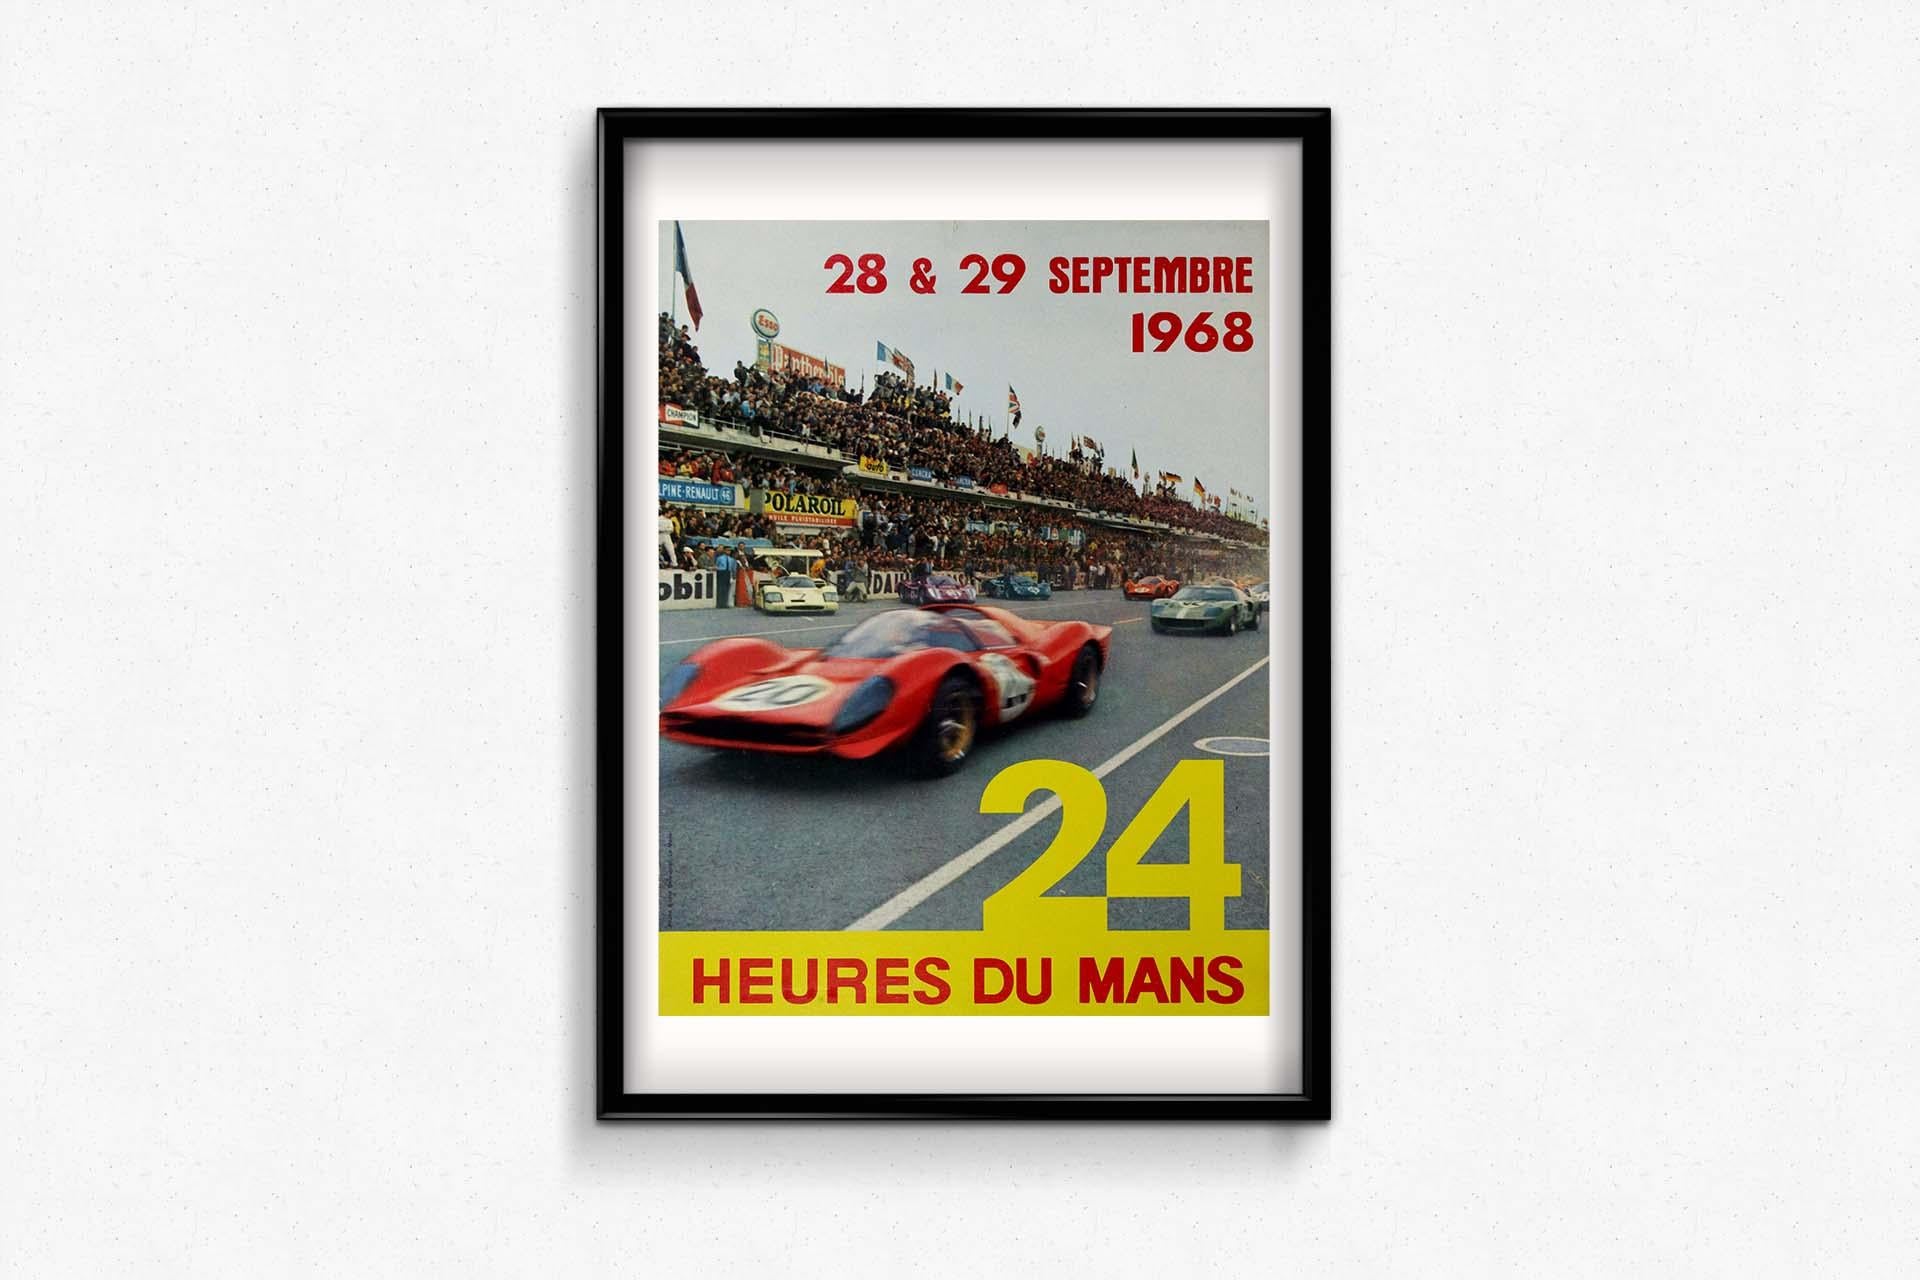 Das Originalplakat von 1968 für das Rennen 